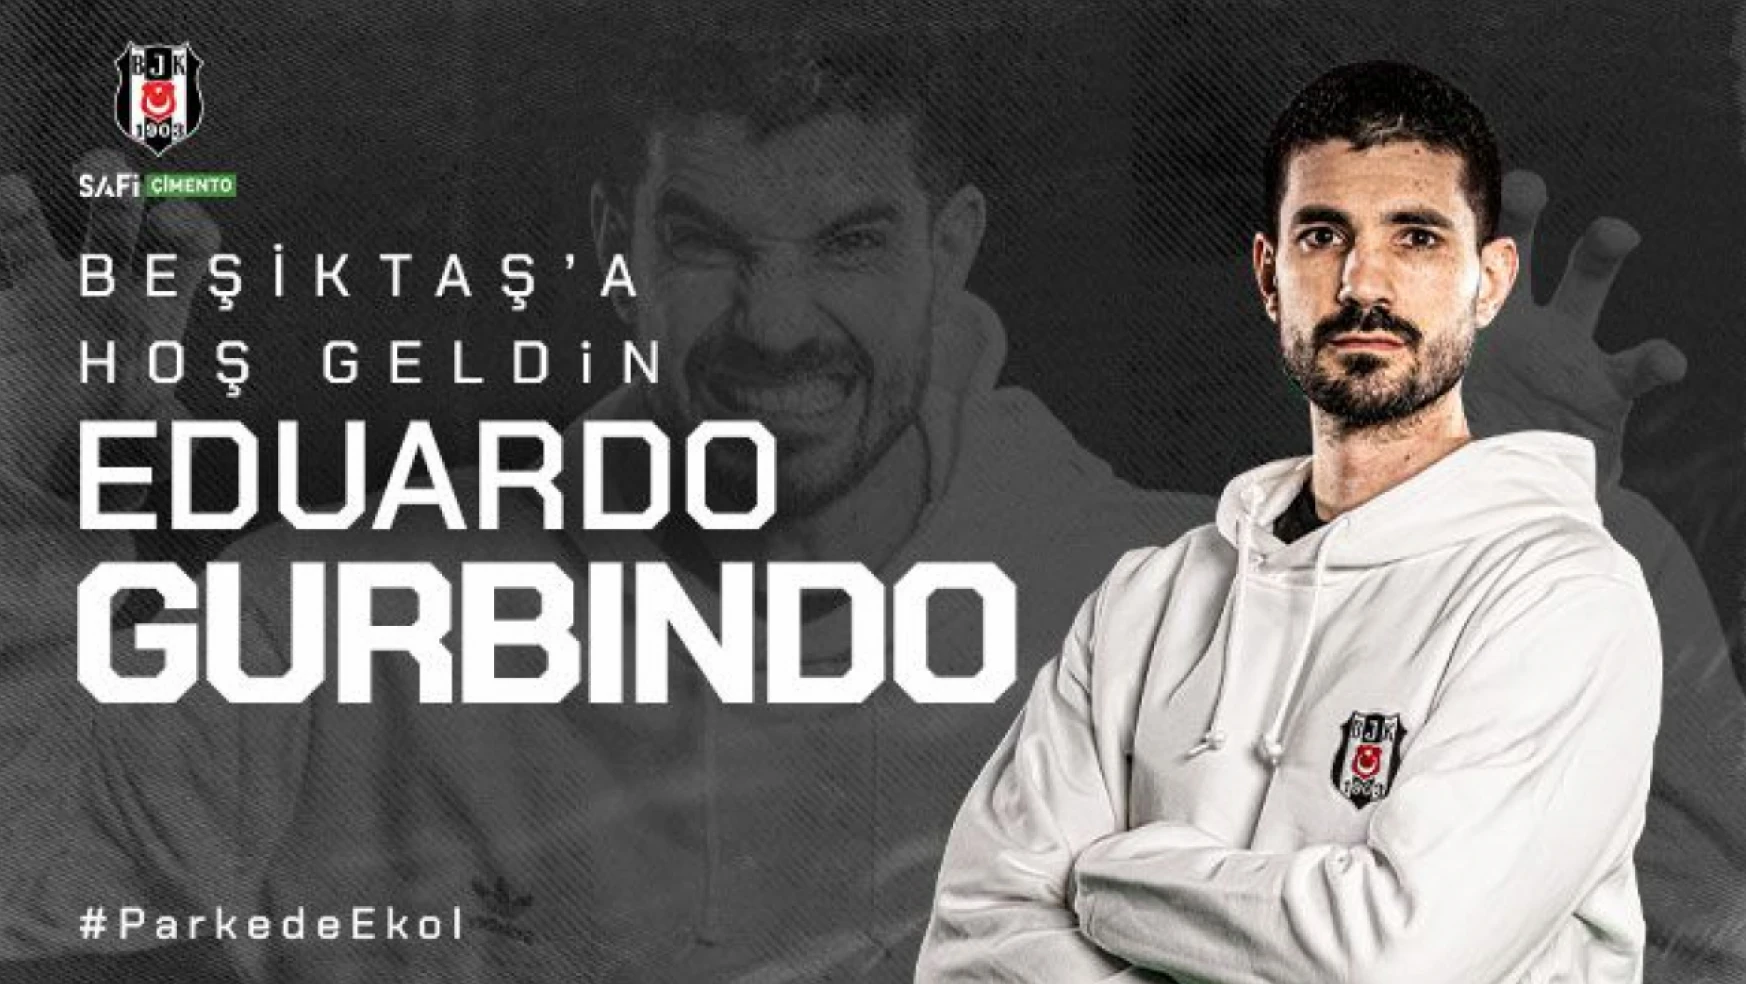 Beşiktaş Safi Çimento'ndan Dev Transfer: Eduardo Gurbindo Martínez Beşiktaş'ta